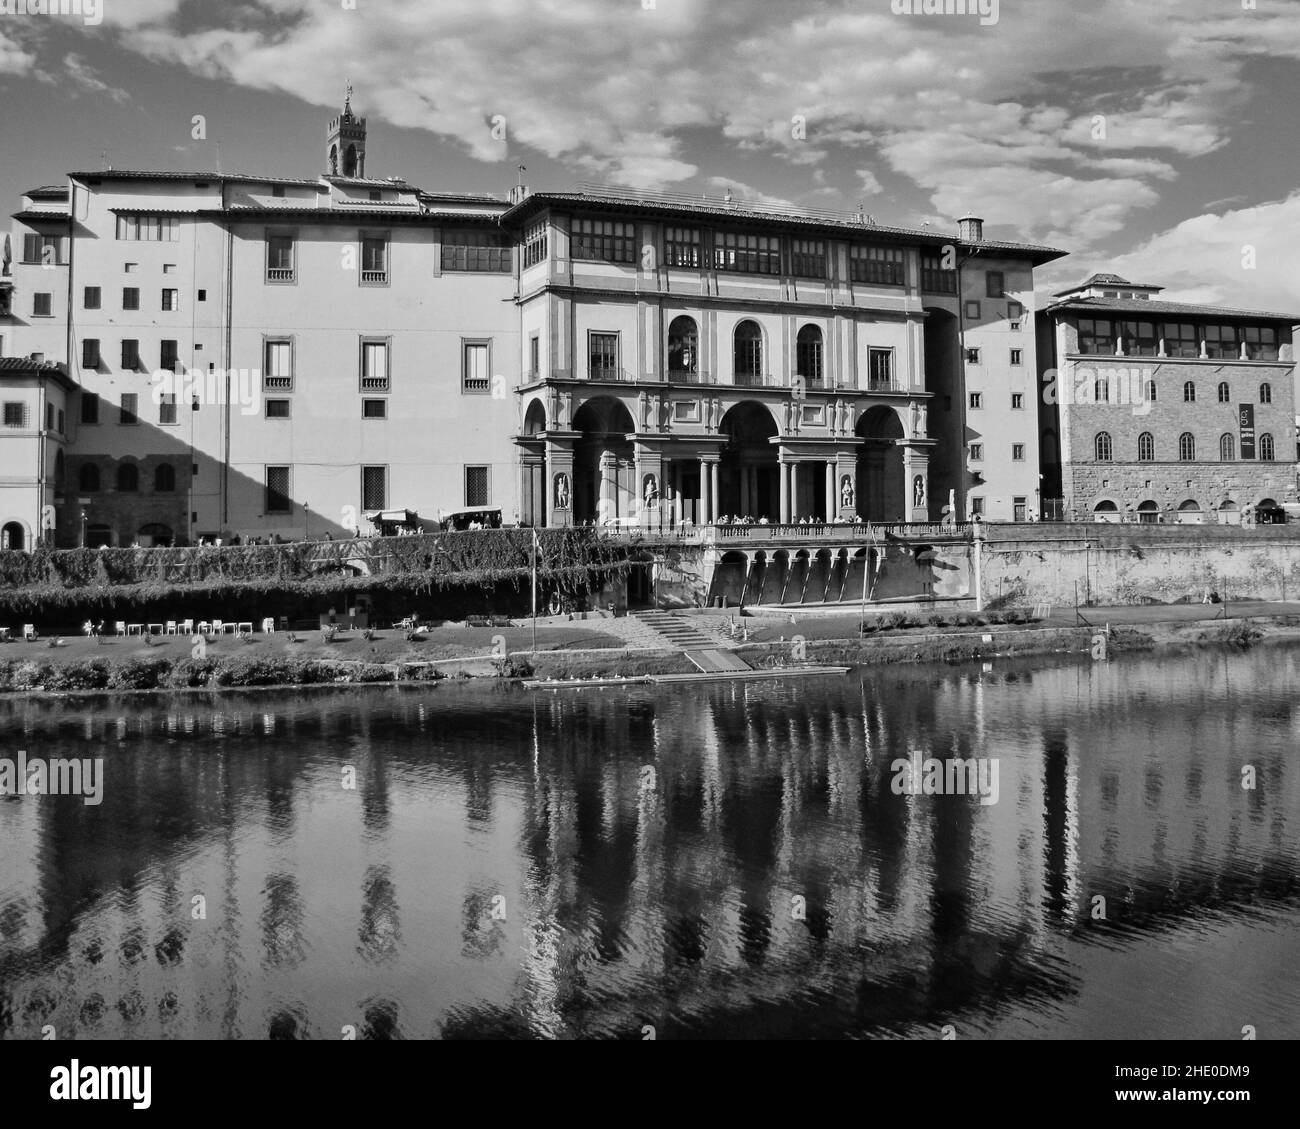 Edifici storici sulla baia del fiume a Firenze Foto Stock